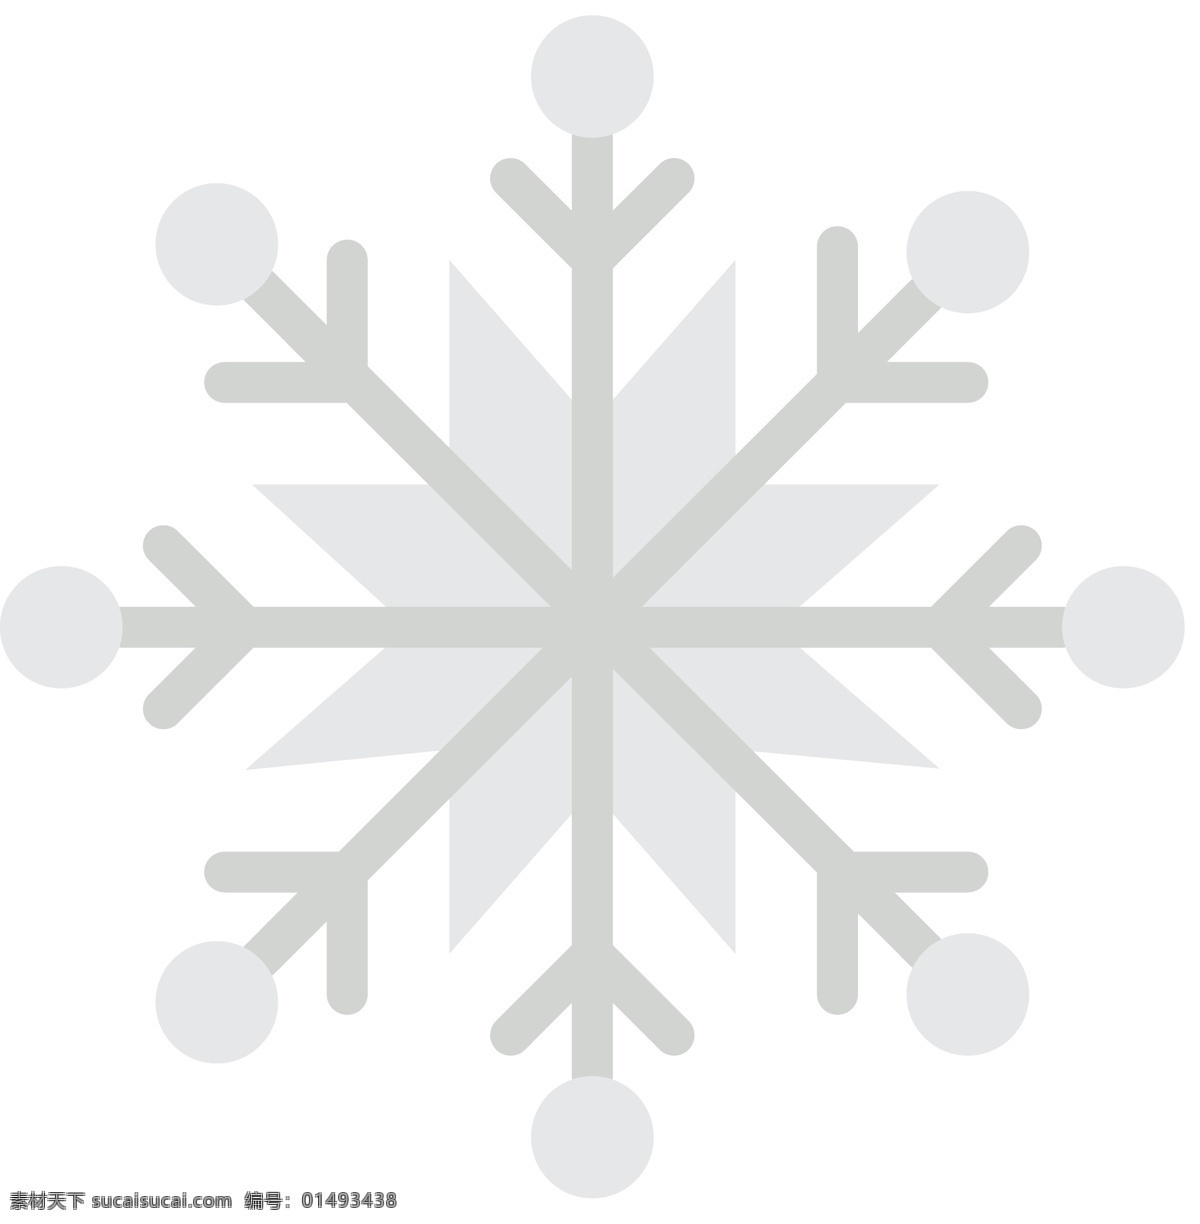 圣诞节 手绘 icon 图标 扁平 单色 多色 简约 精美 可爱 商务 圆润 立体 雪花